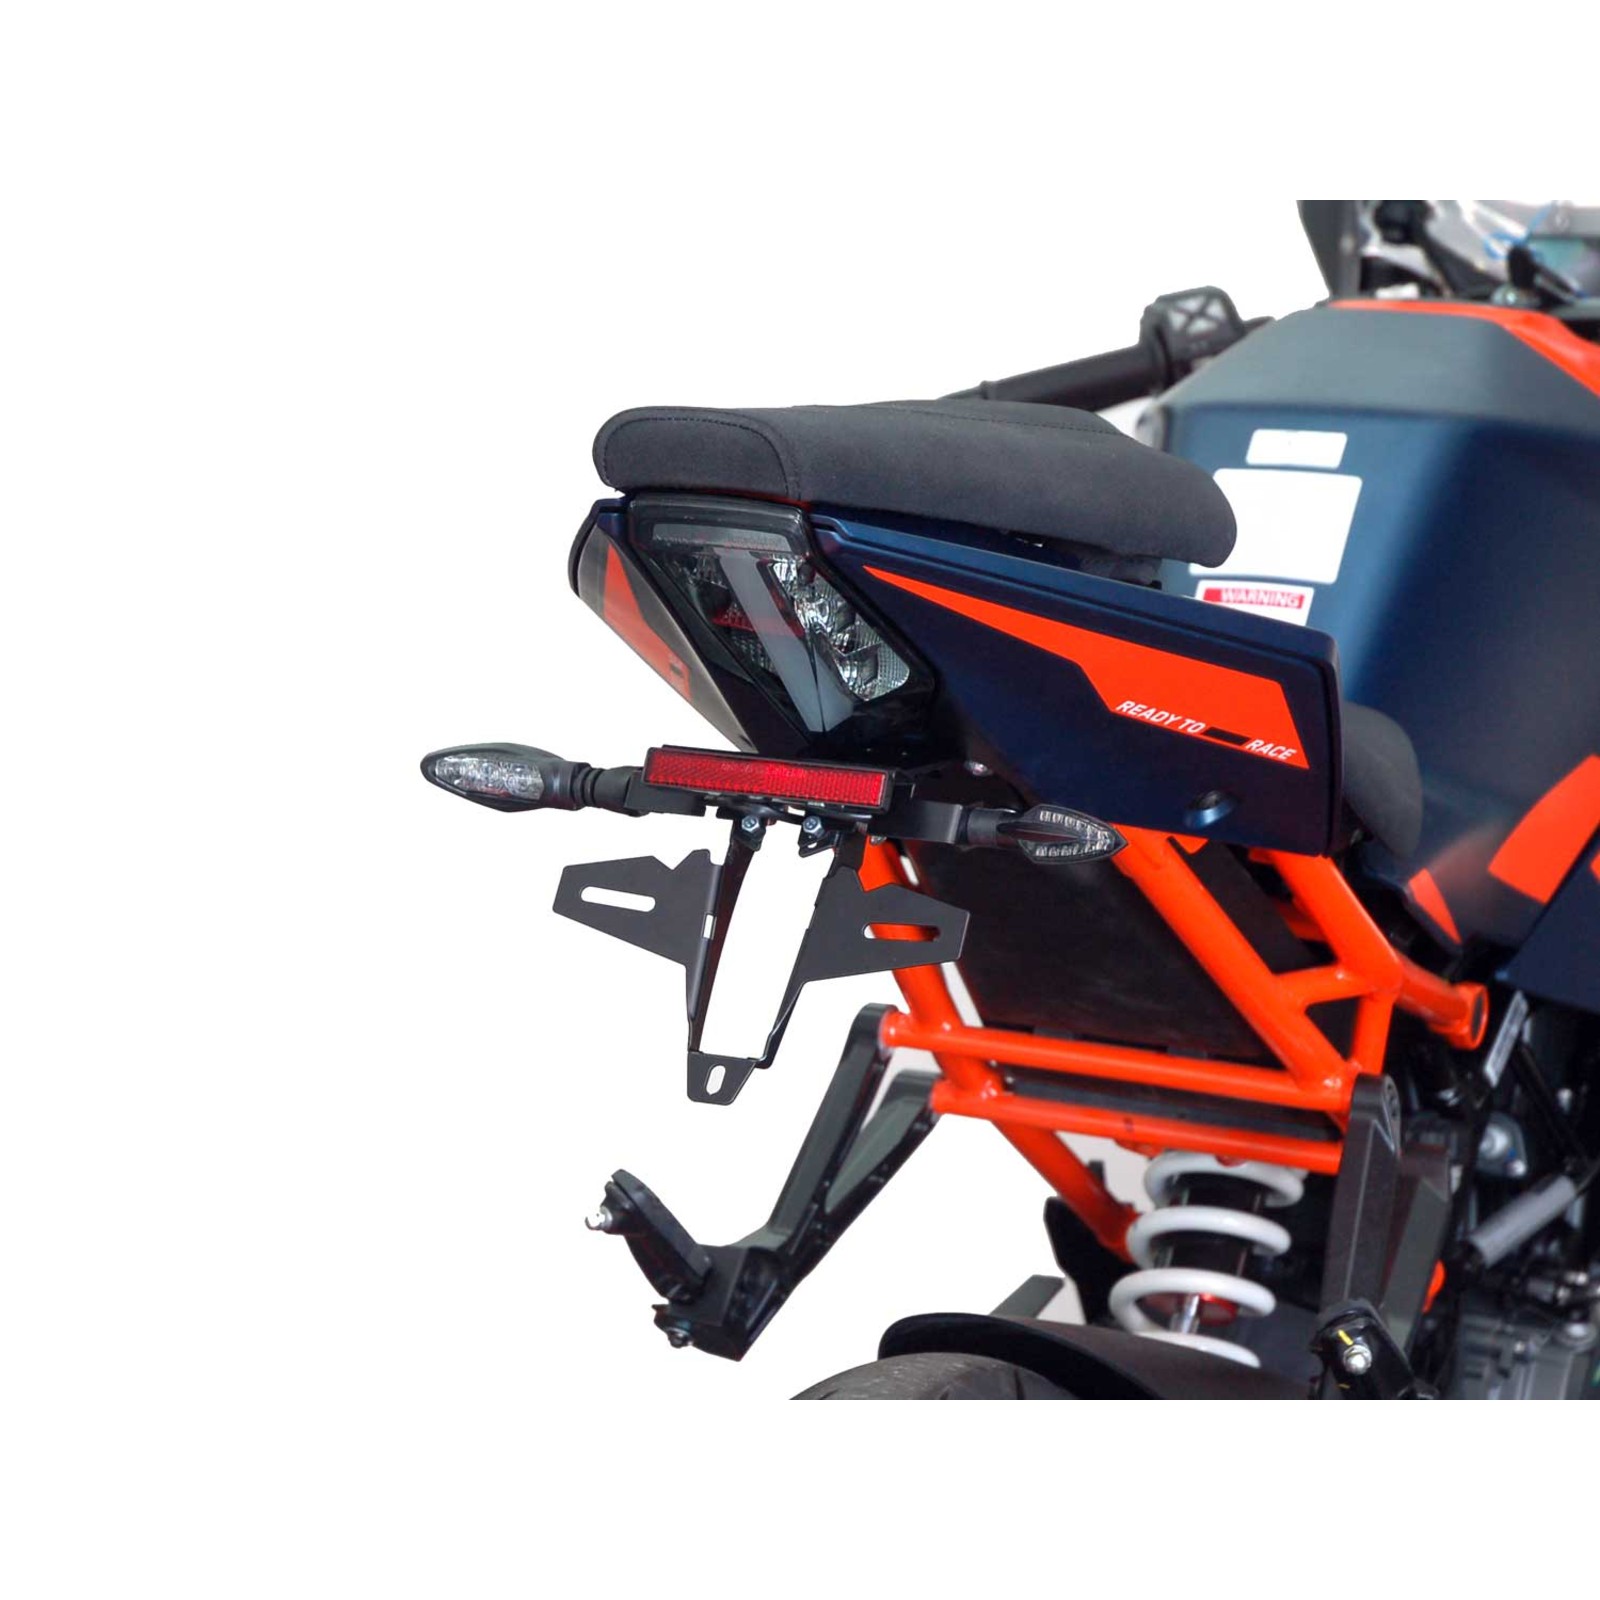 passend für KTM Duke 125 200 250 390 2013 2014 2015 2016 2017 2018 2019 KUZOHHYKHX Motorrad-Zierleisten Motorrad-Kennzeichen-Rahmenhalterung mit Licht Farbe: Orange 